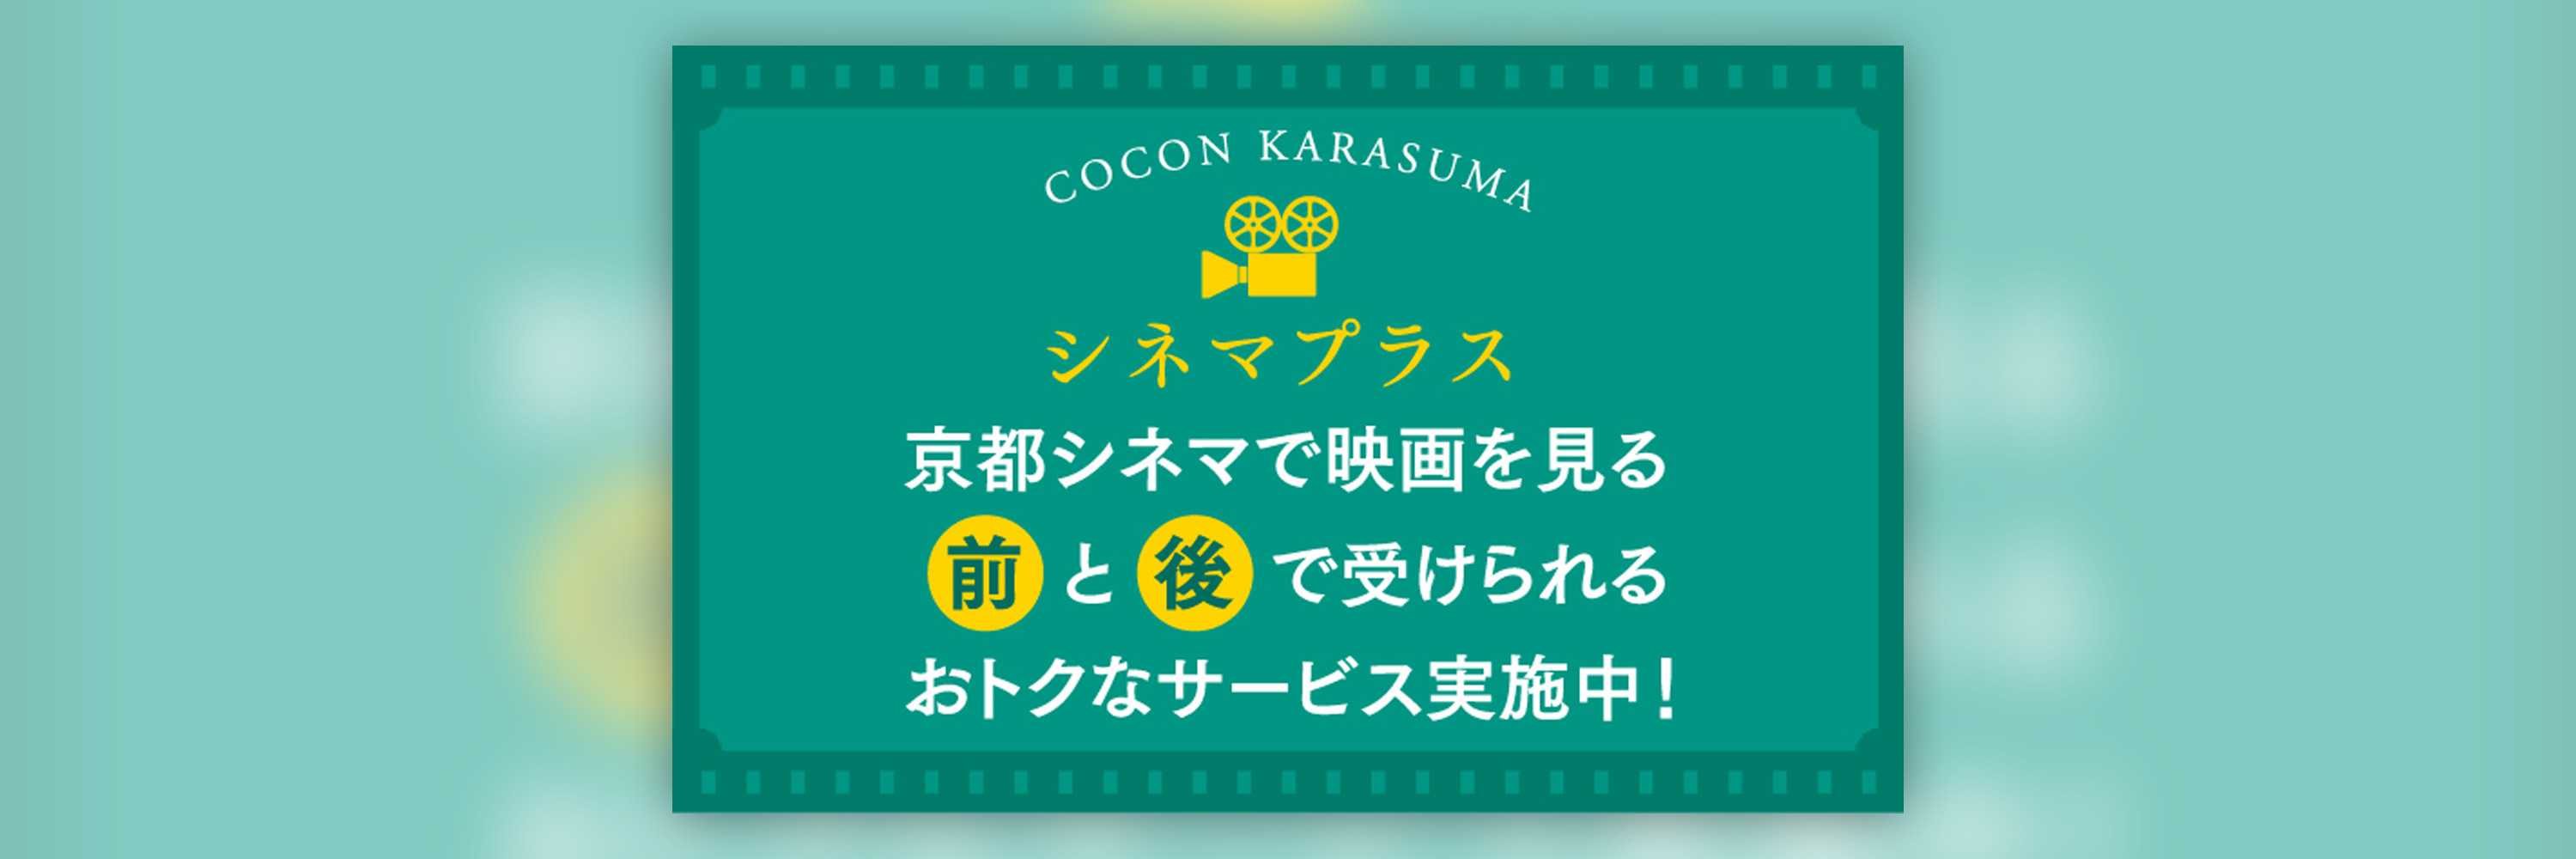 京都シネマで映画を見る前と後でおトクなサービス実施中 Cocon Karasuma 古今烏丸